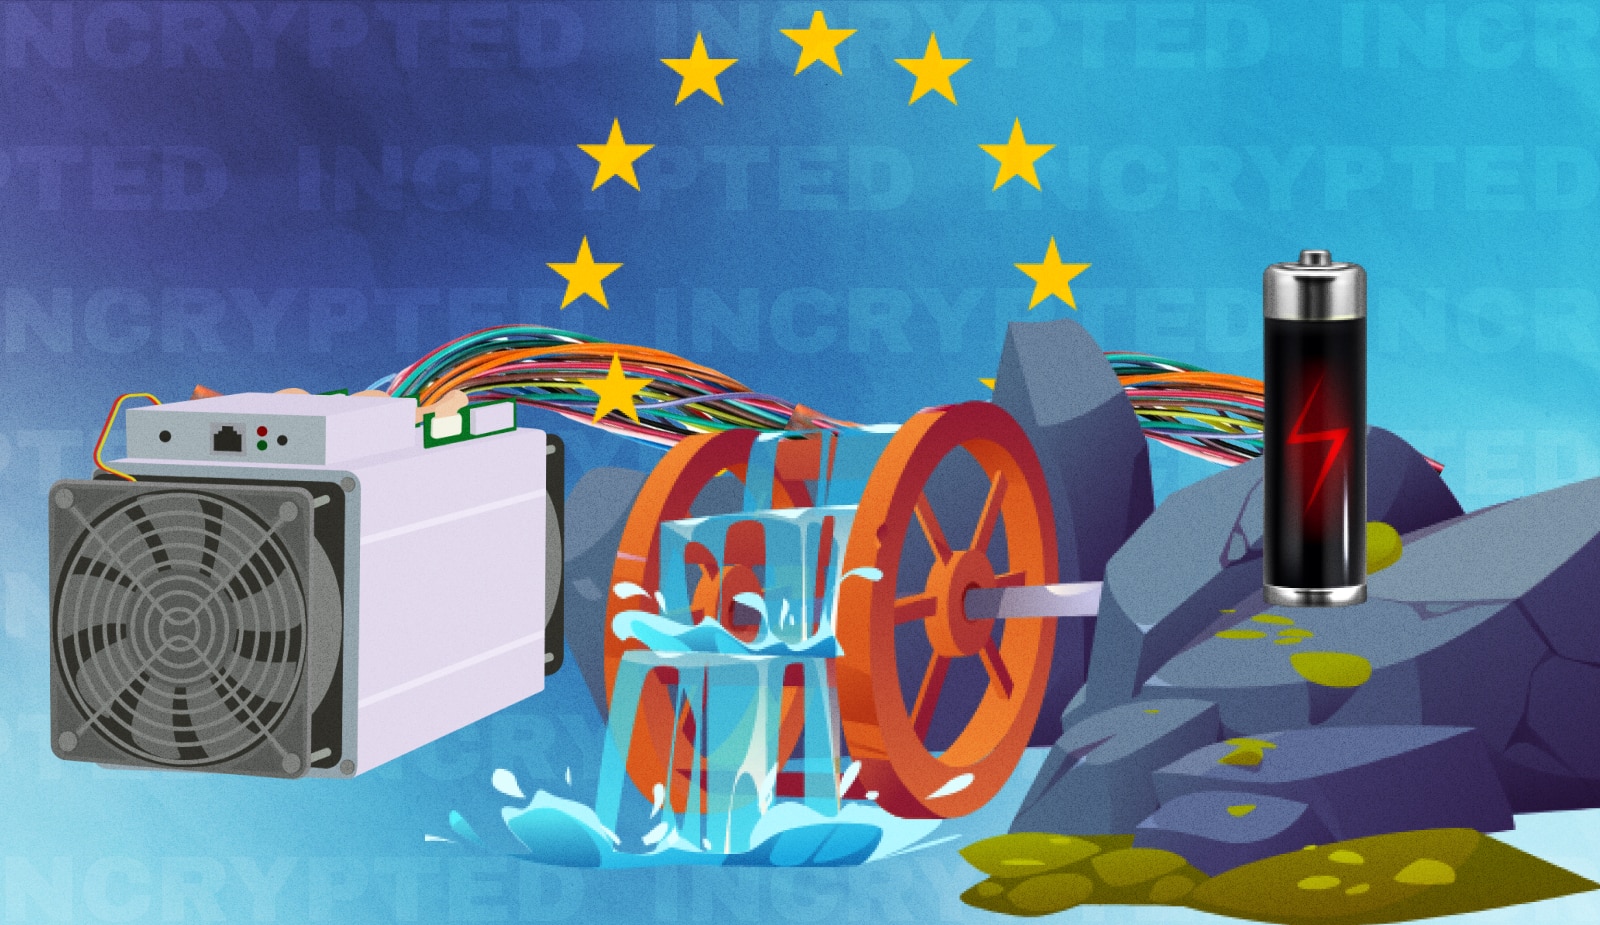 Еврокомиссия предупредила о возможной приостановке майнинга в ЕС. Заглавный коллаж новости.